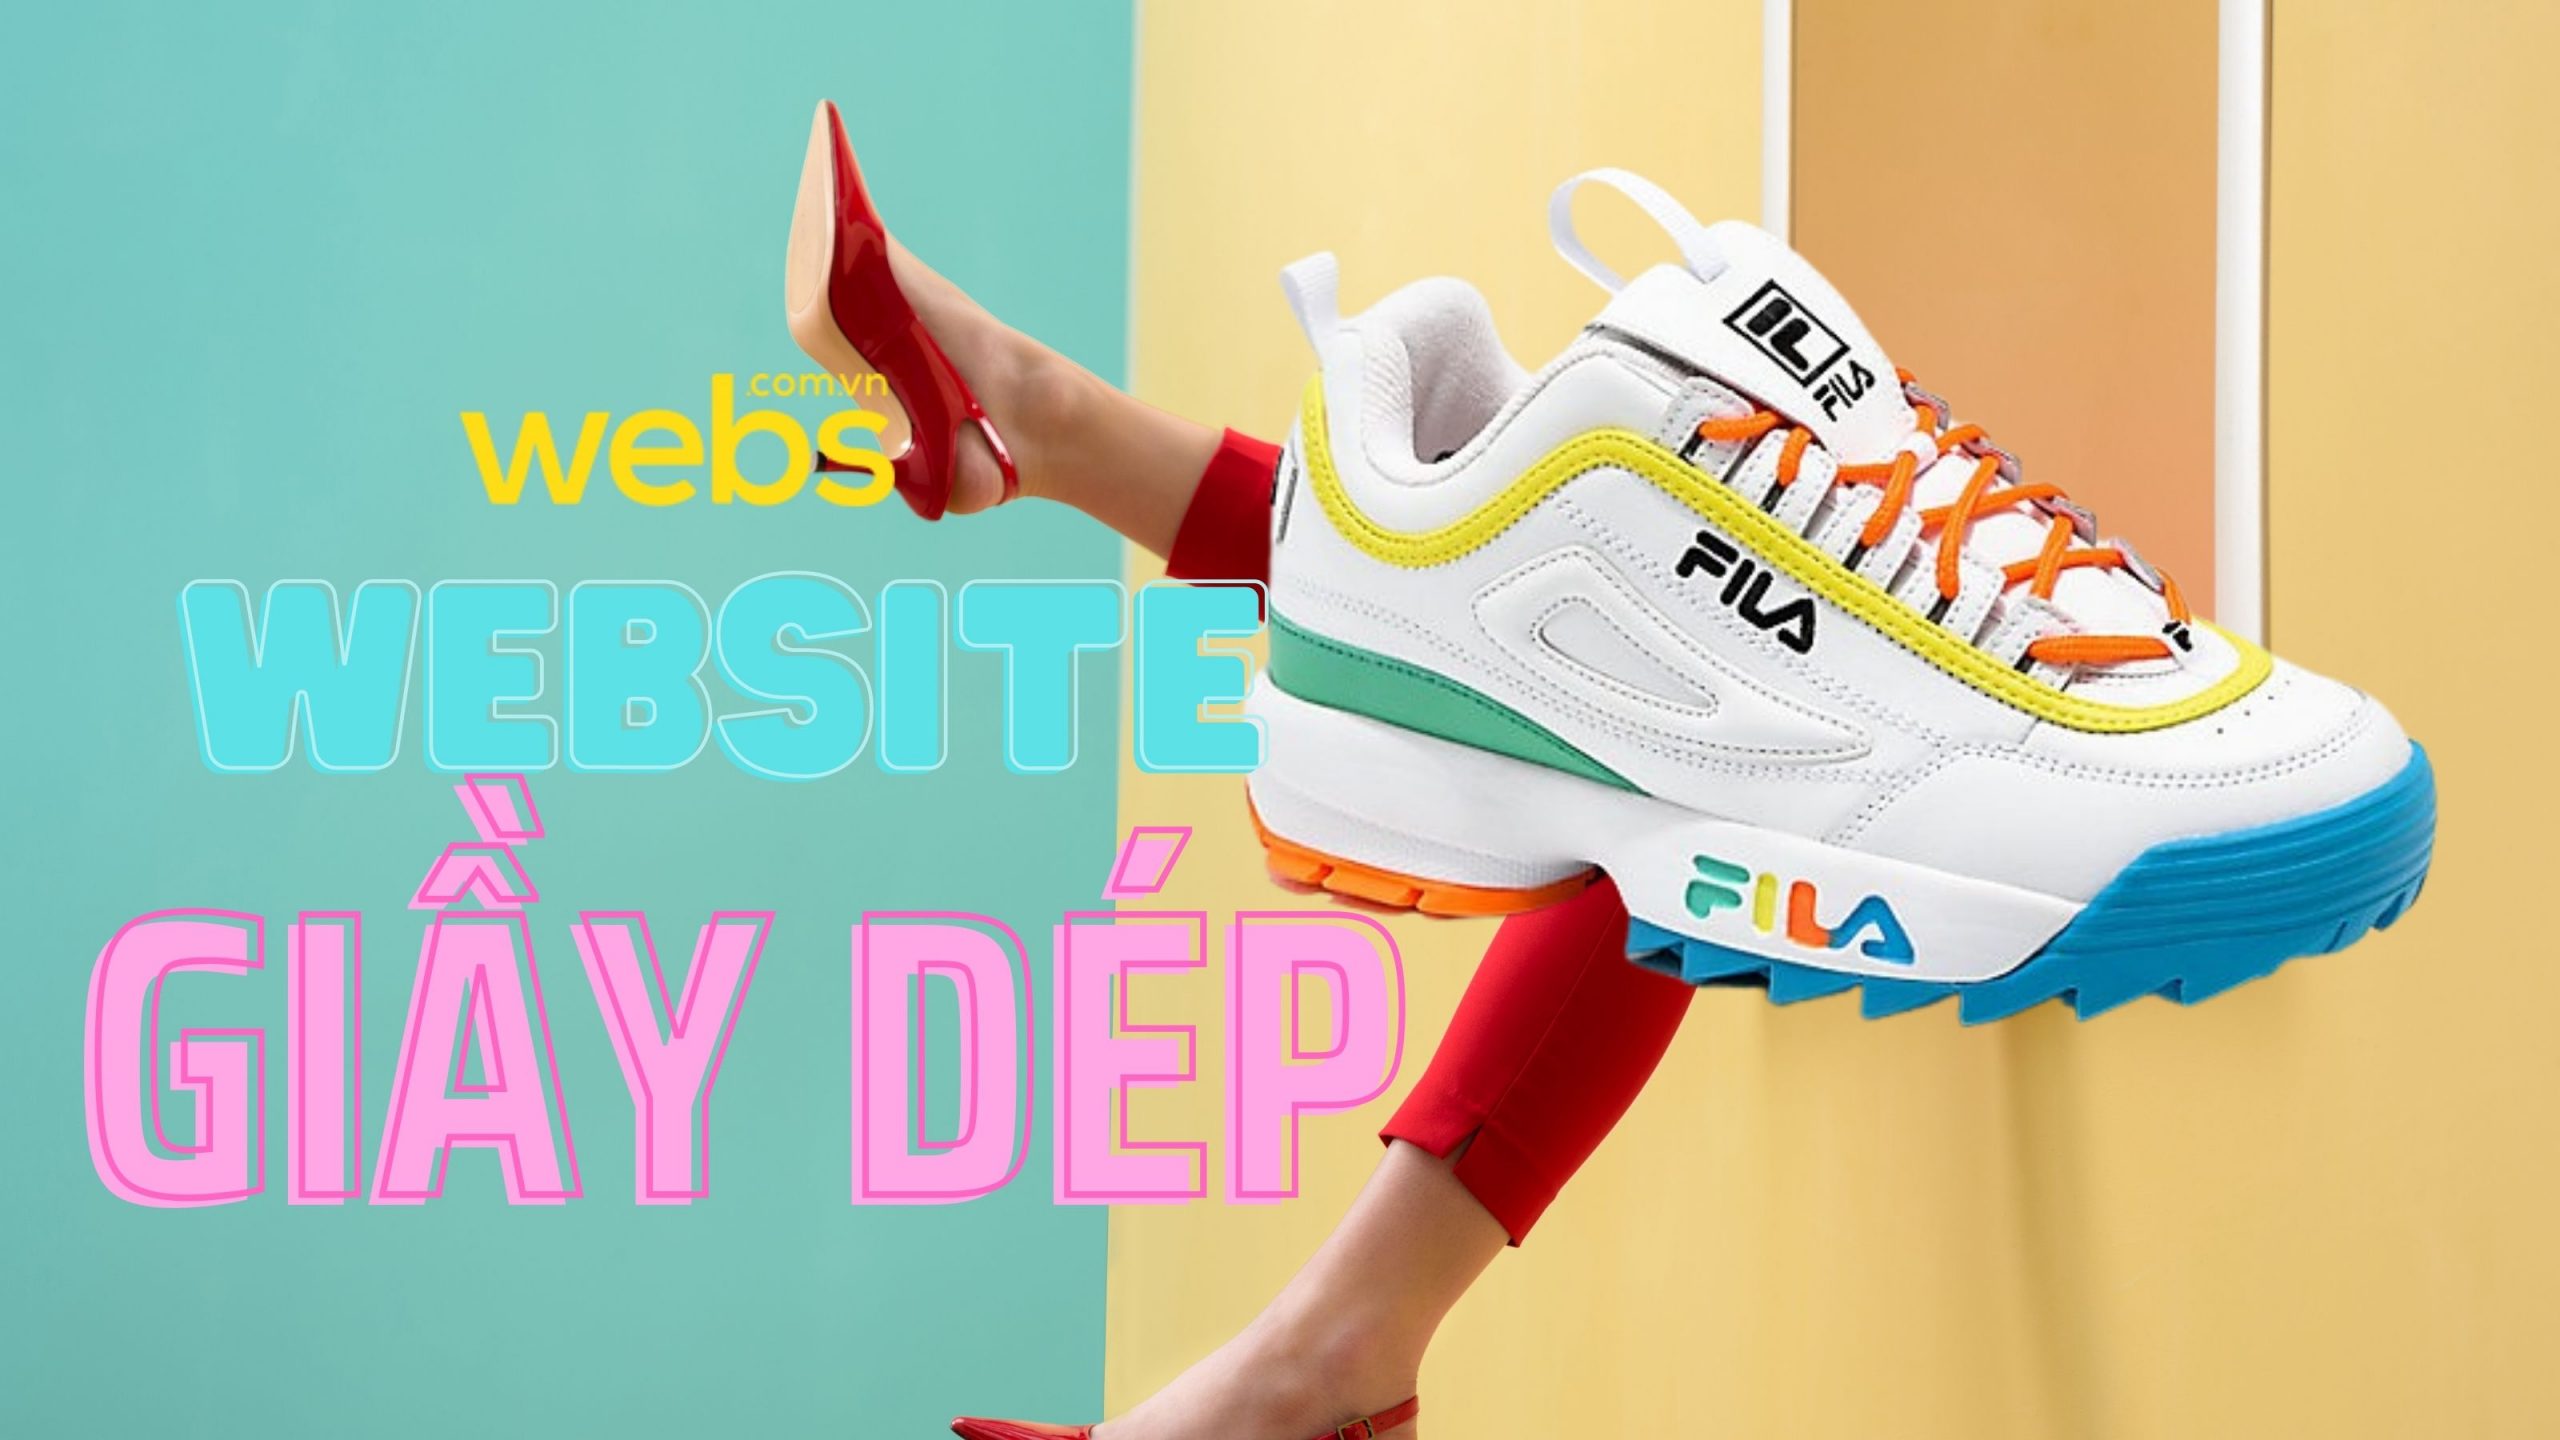 Thiết kế website bán giày dép